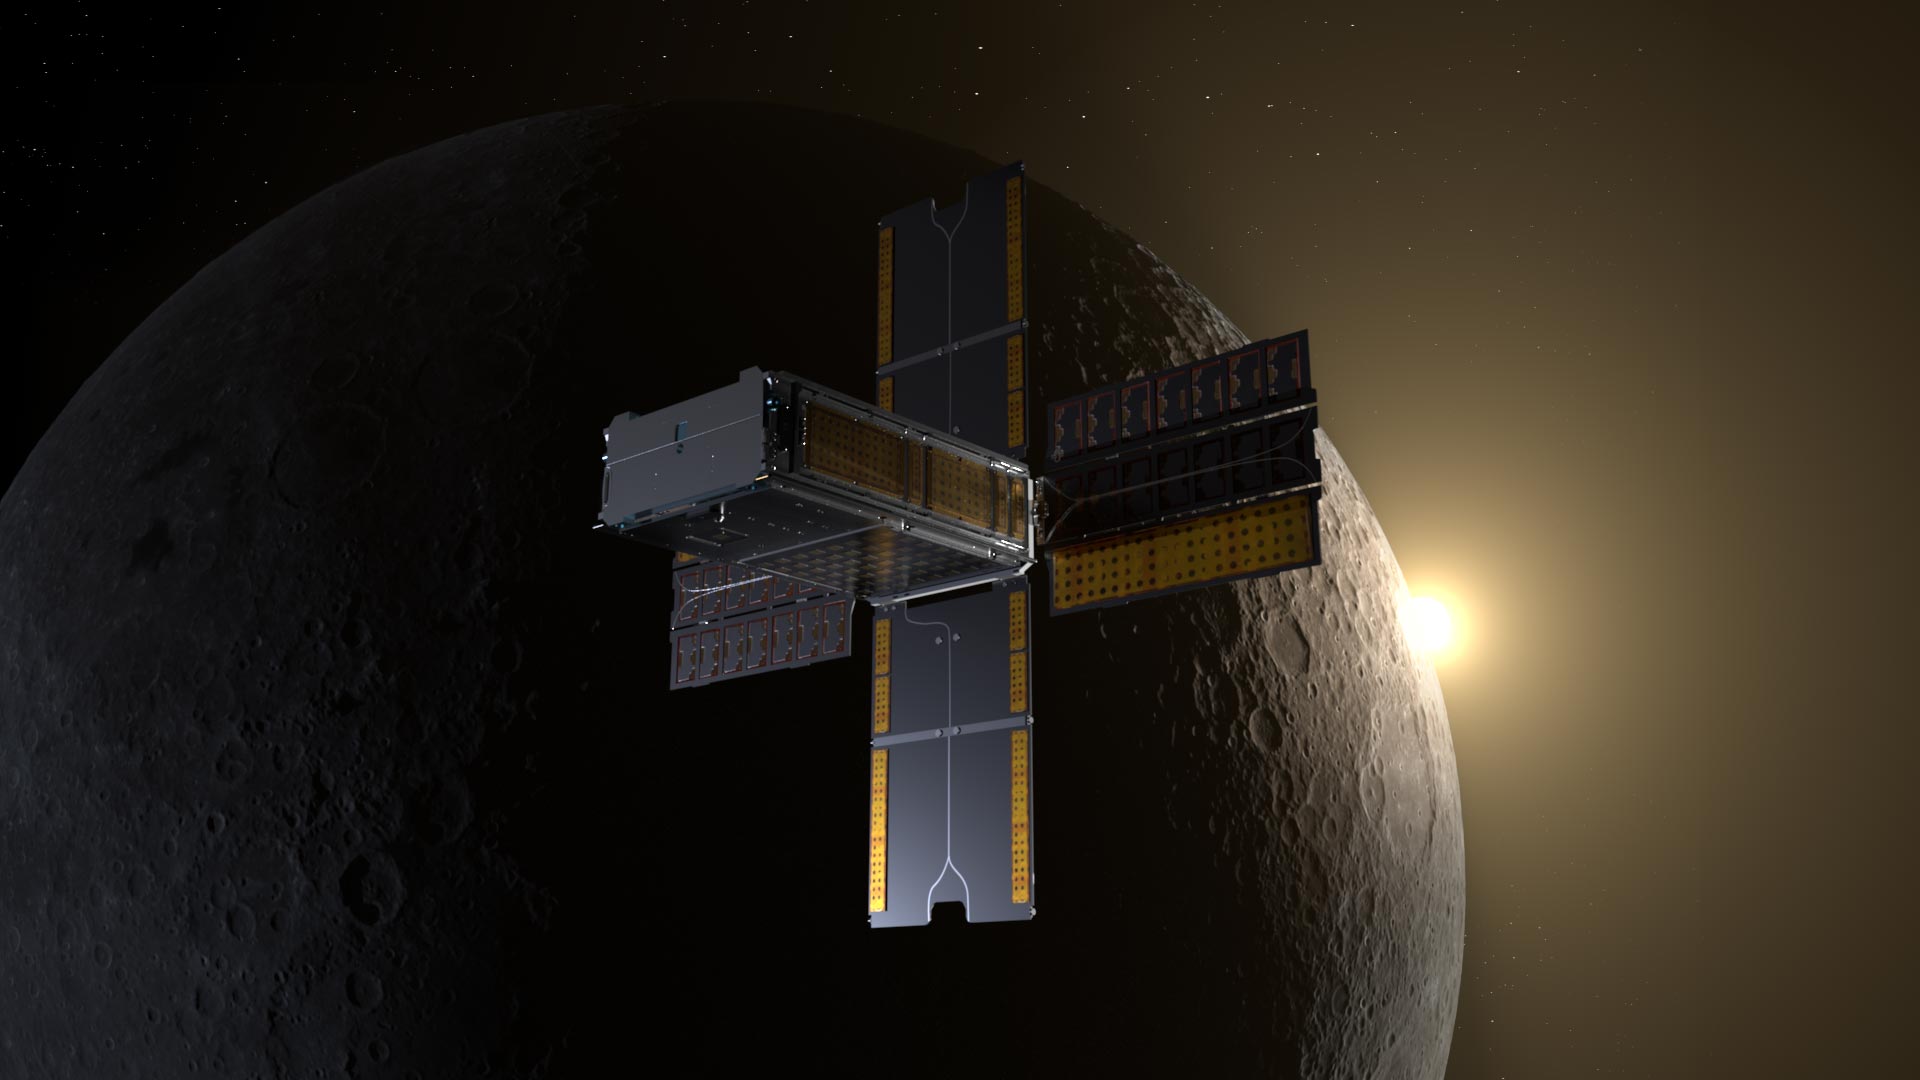 La misión BioSentinel de la NASA está en marcha después del exitoso sobrevuelo lunar